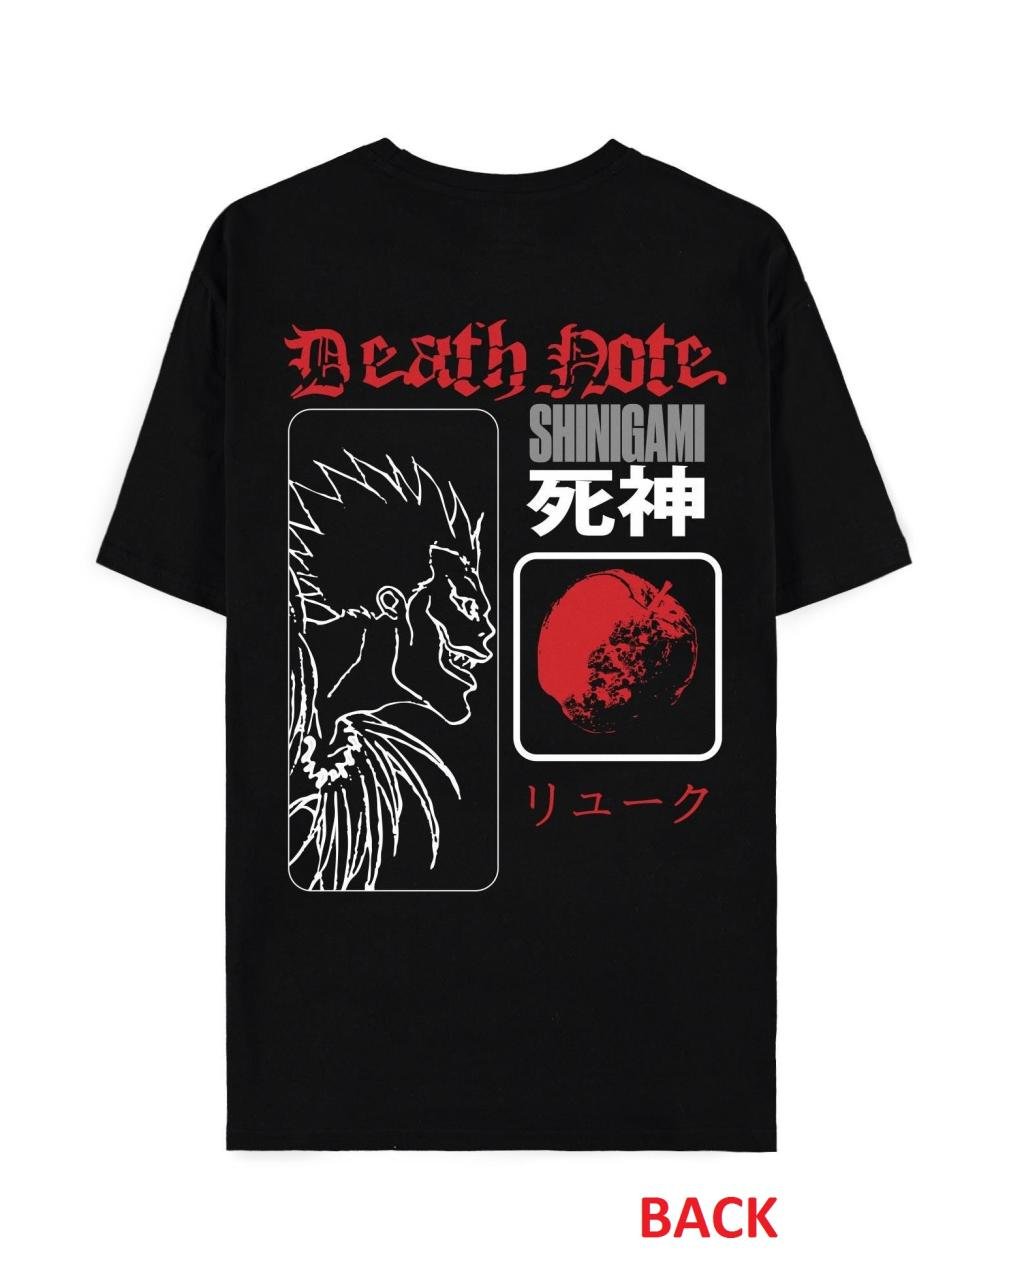 DEATH NOTE - Eat the Apple - Men's T-shirt (XS)